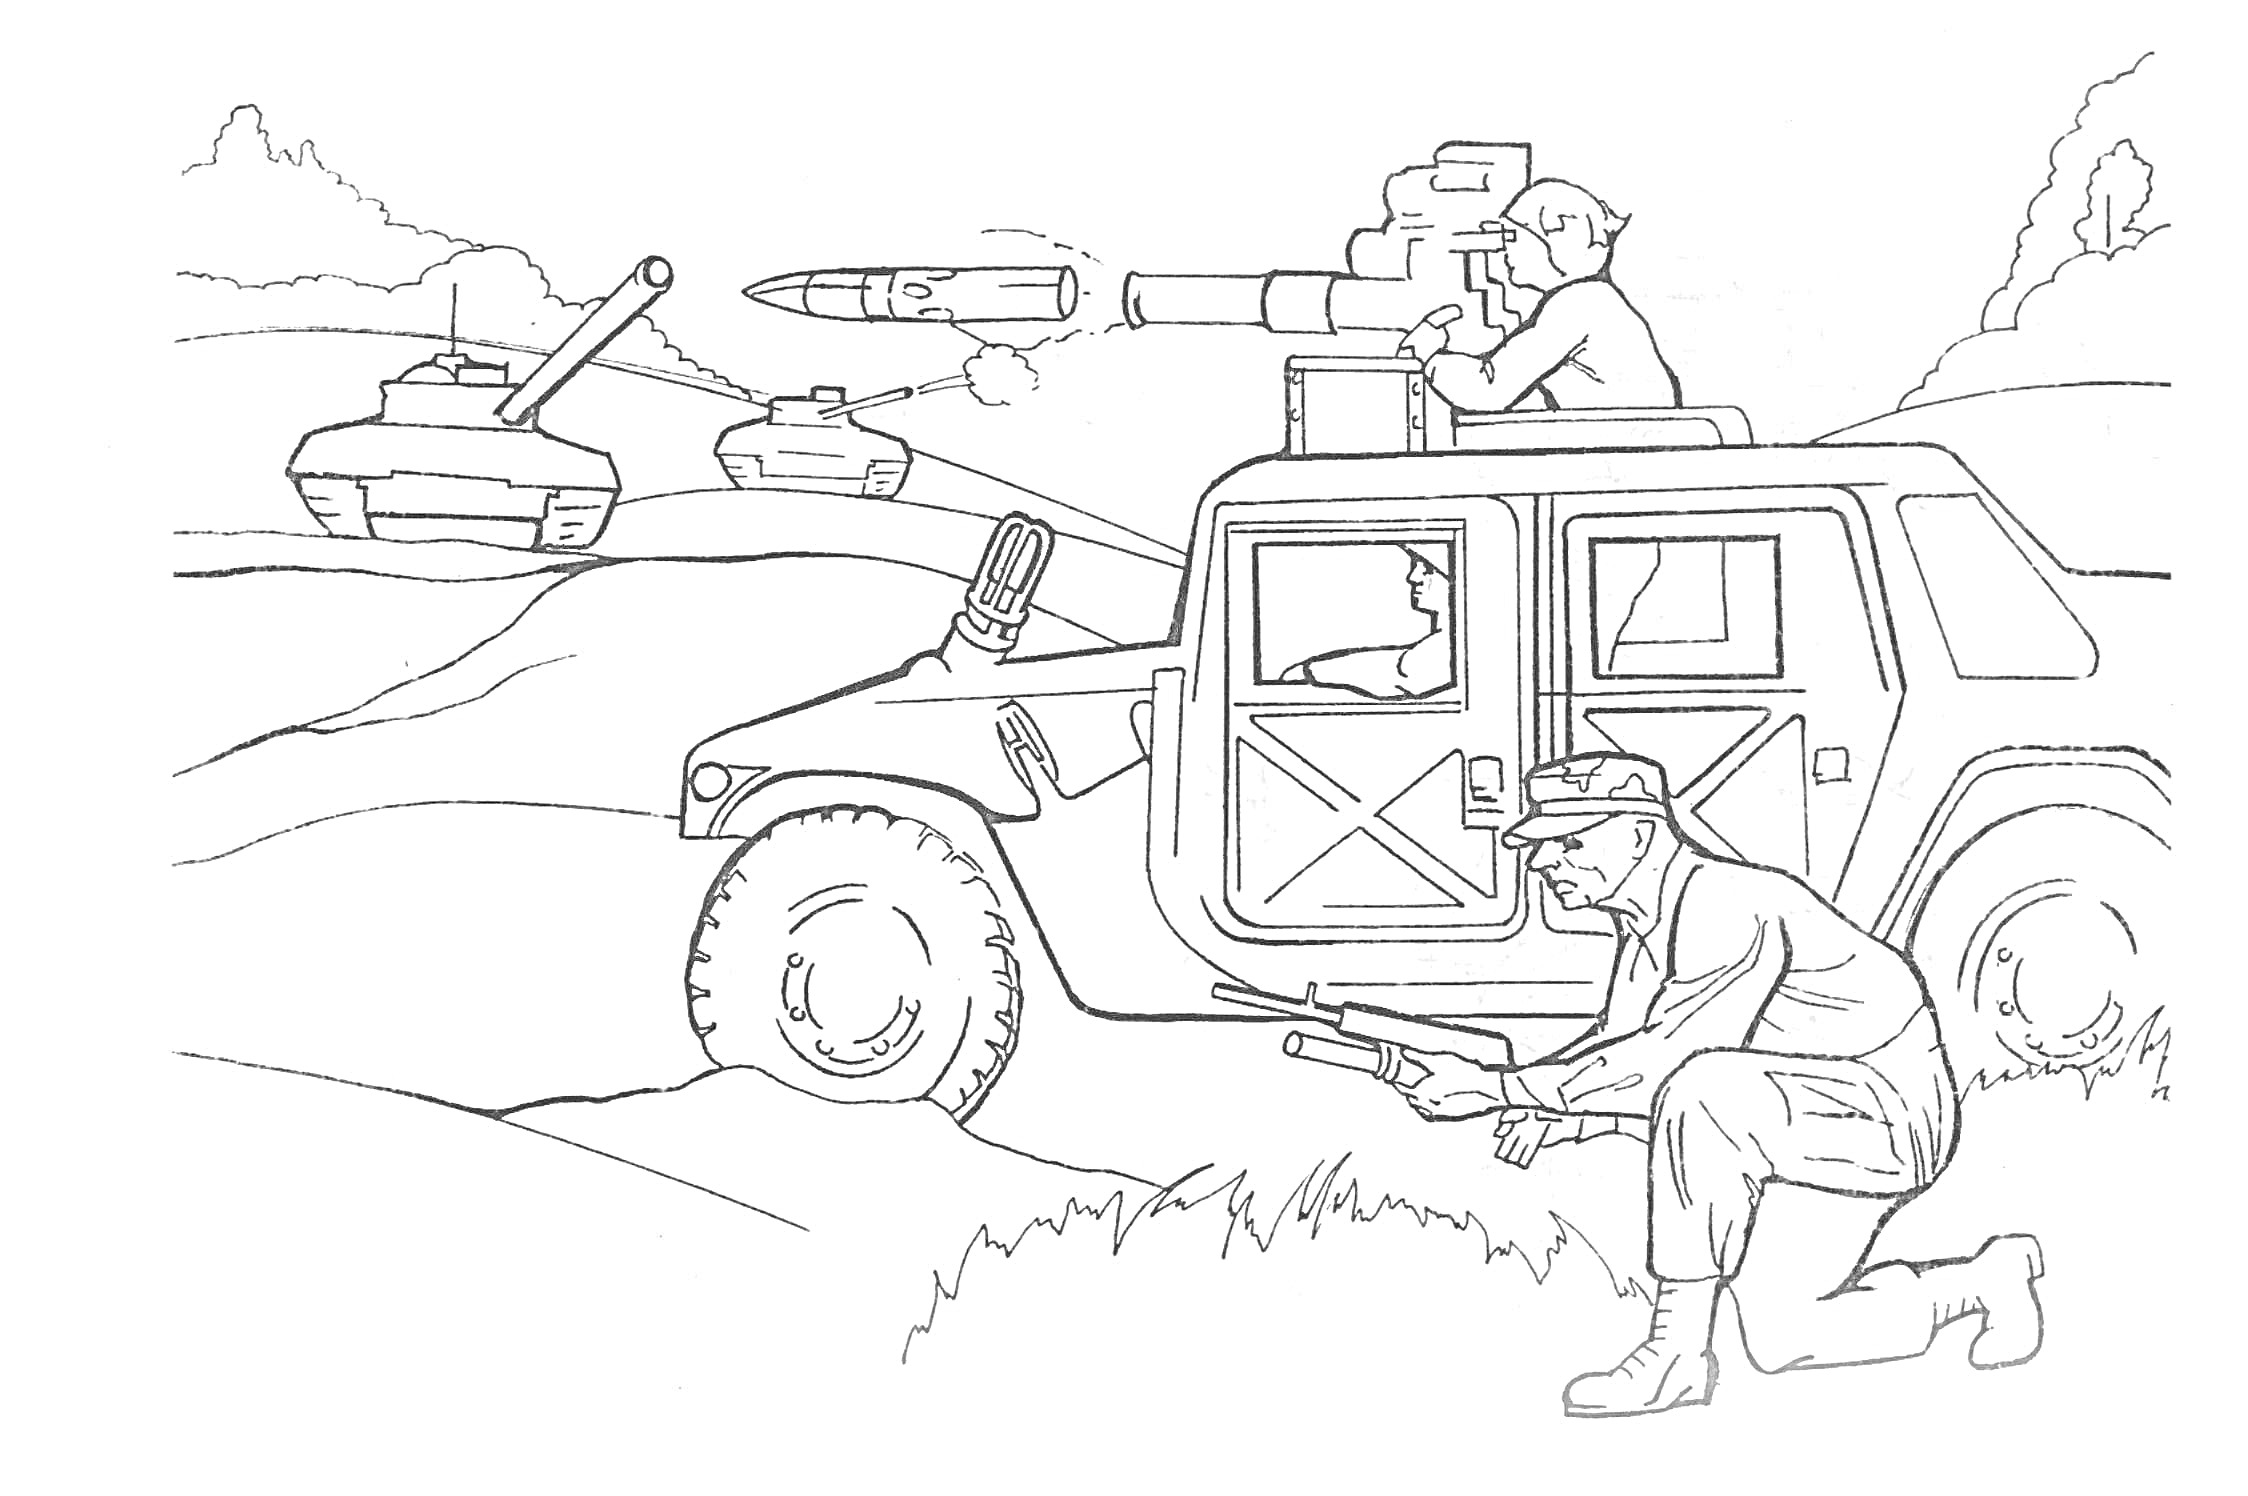 Военный джип с установленным пулеметом и солдатом, стреляющим из укрытия. На заднем плане боевой танк.